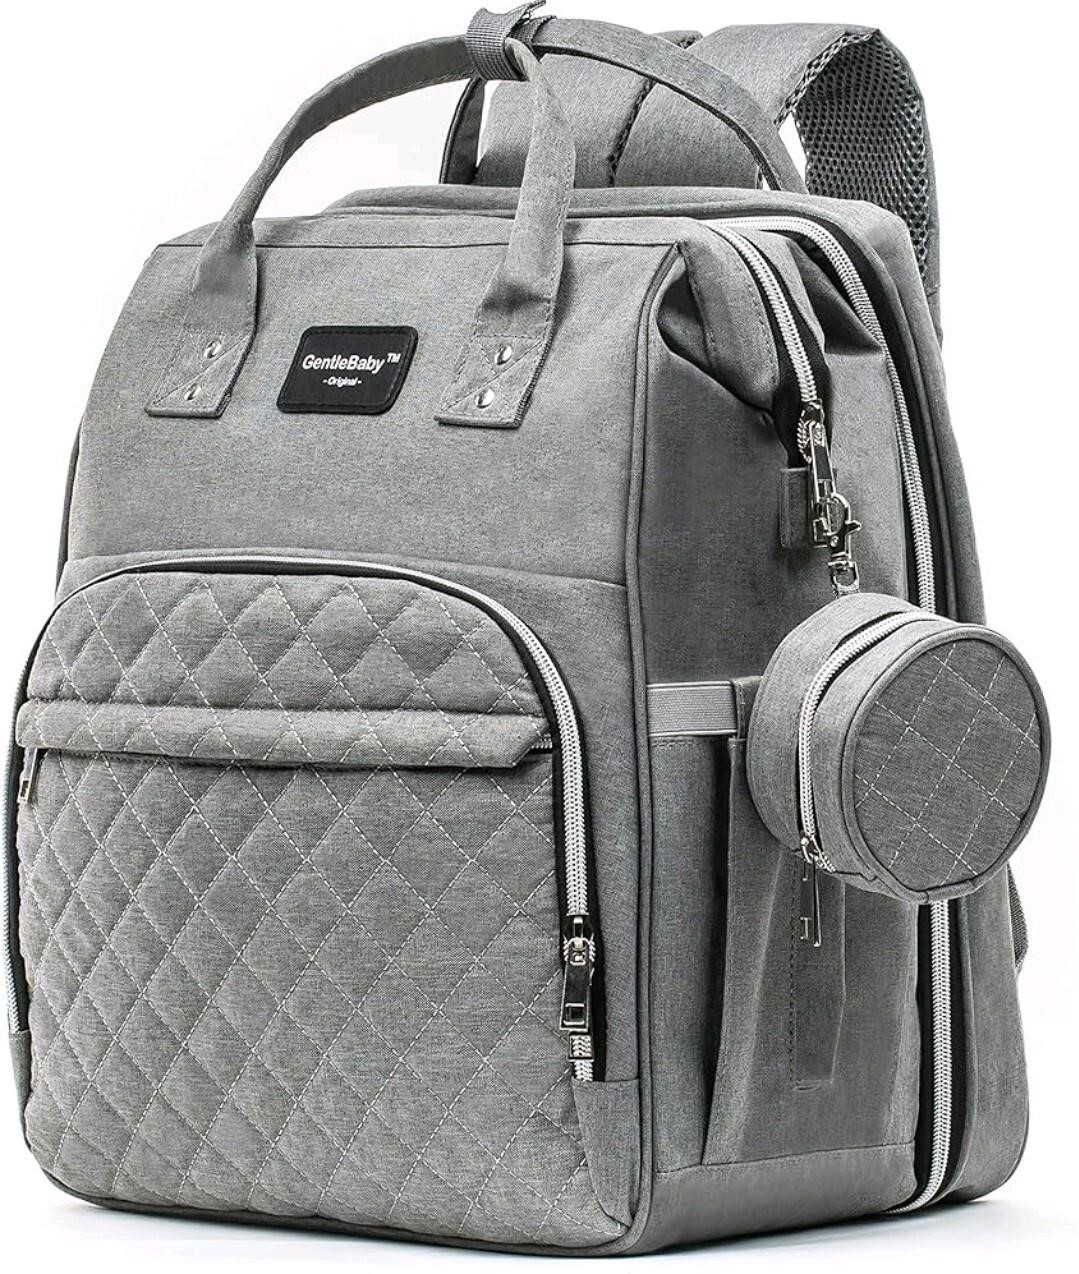 GentleBaby Diaper Bag Backpack